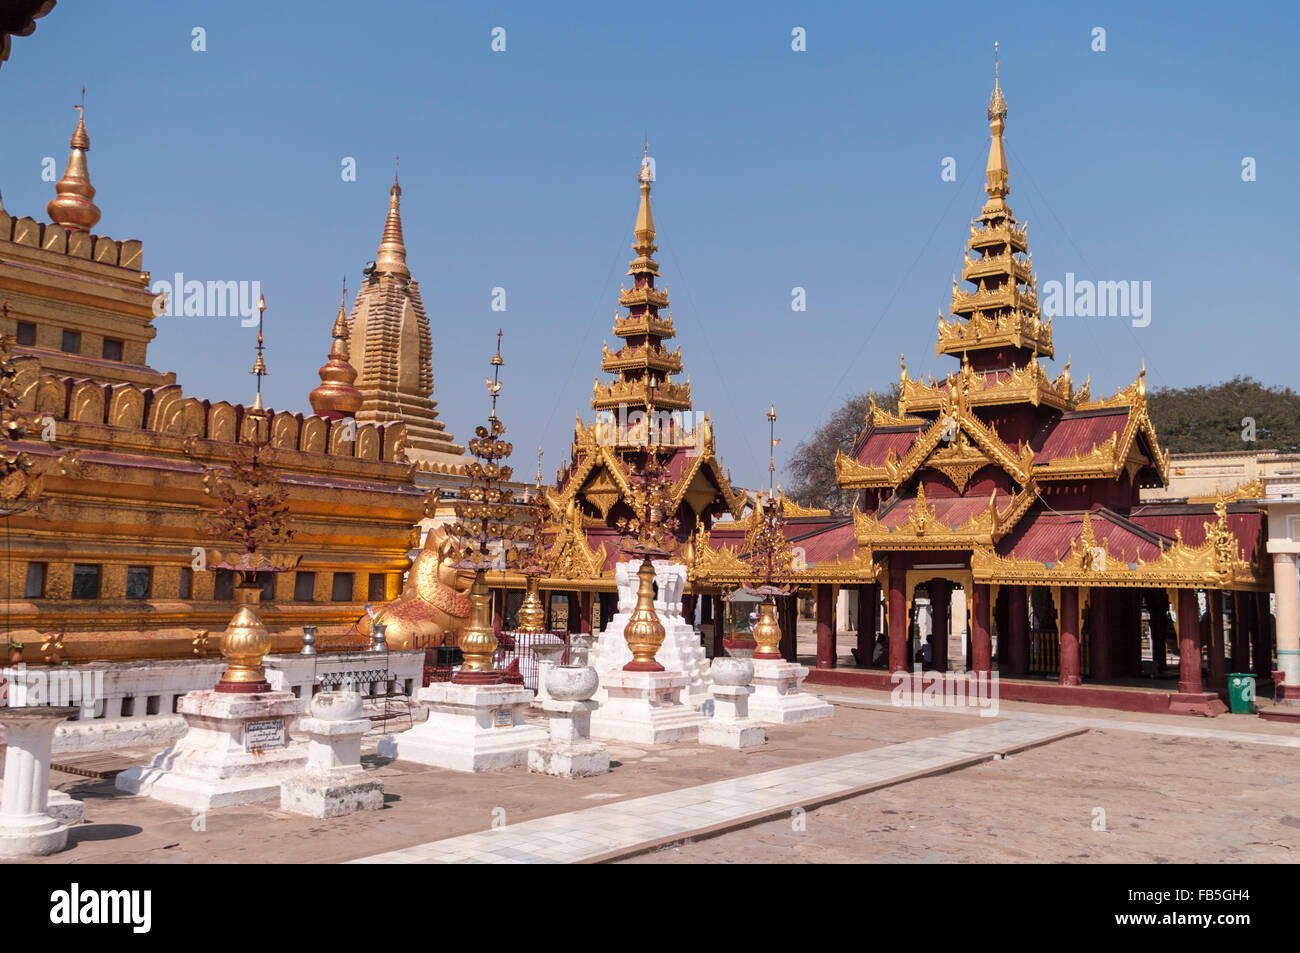 Shwezigon pagoda in Bagan, Mandalay Region, Myanmar. Stock Photo